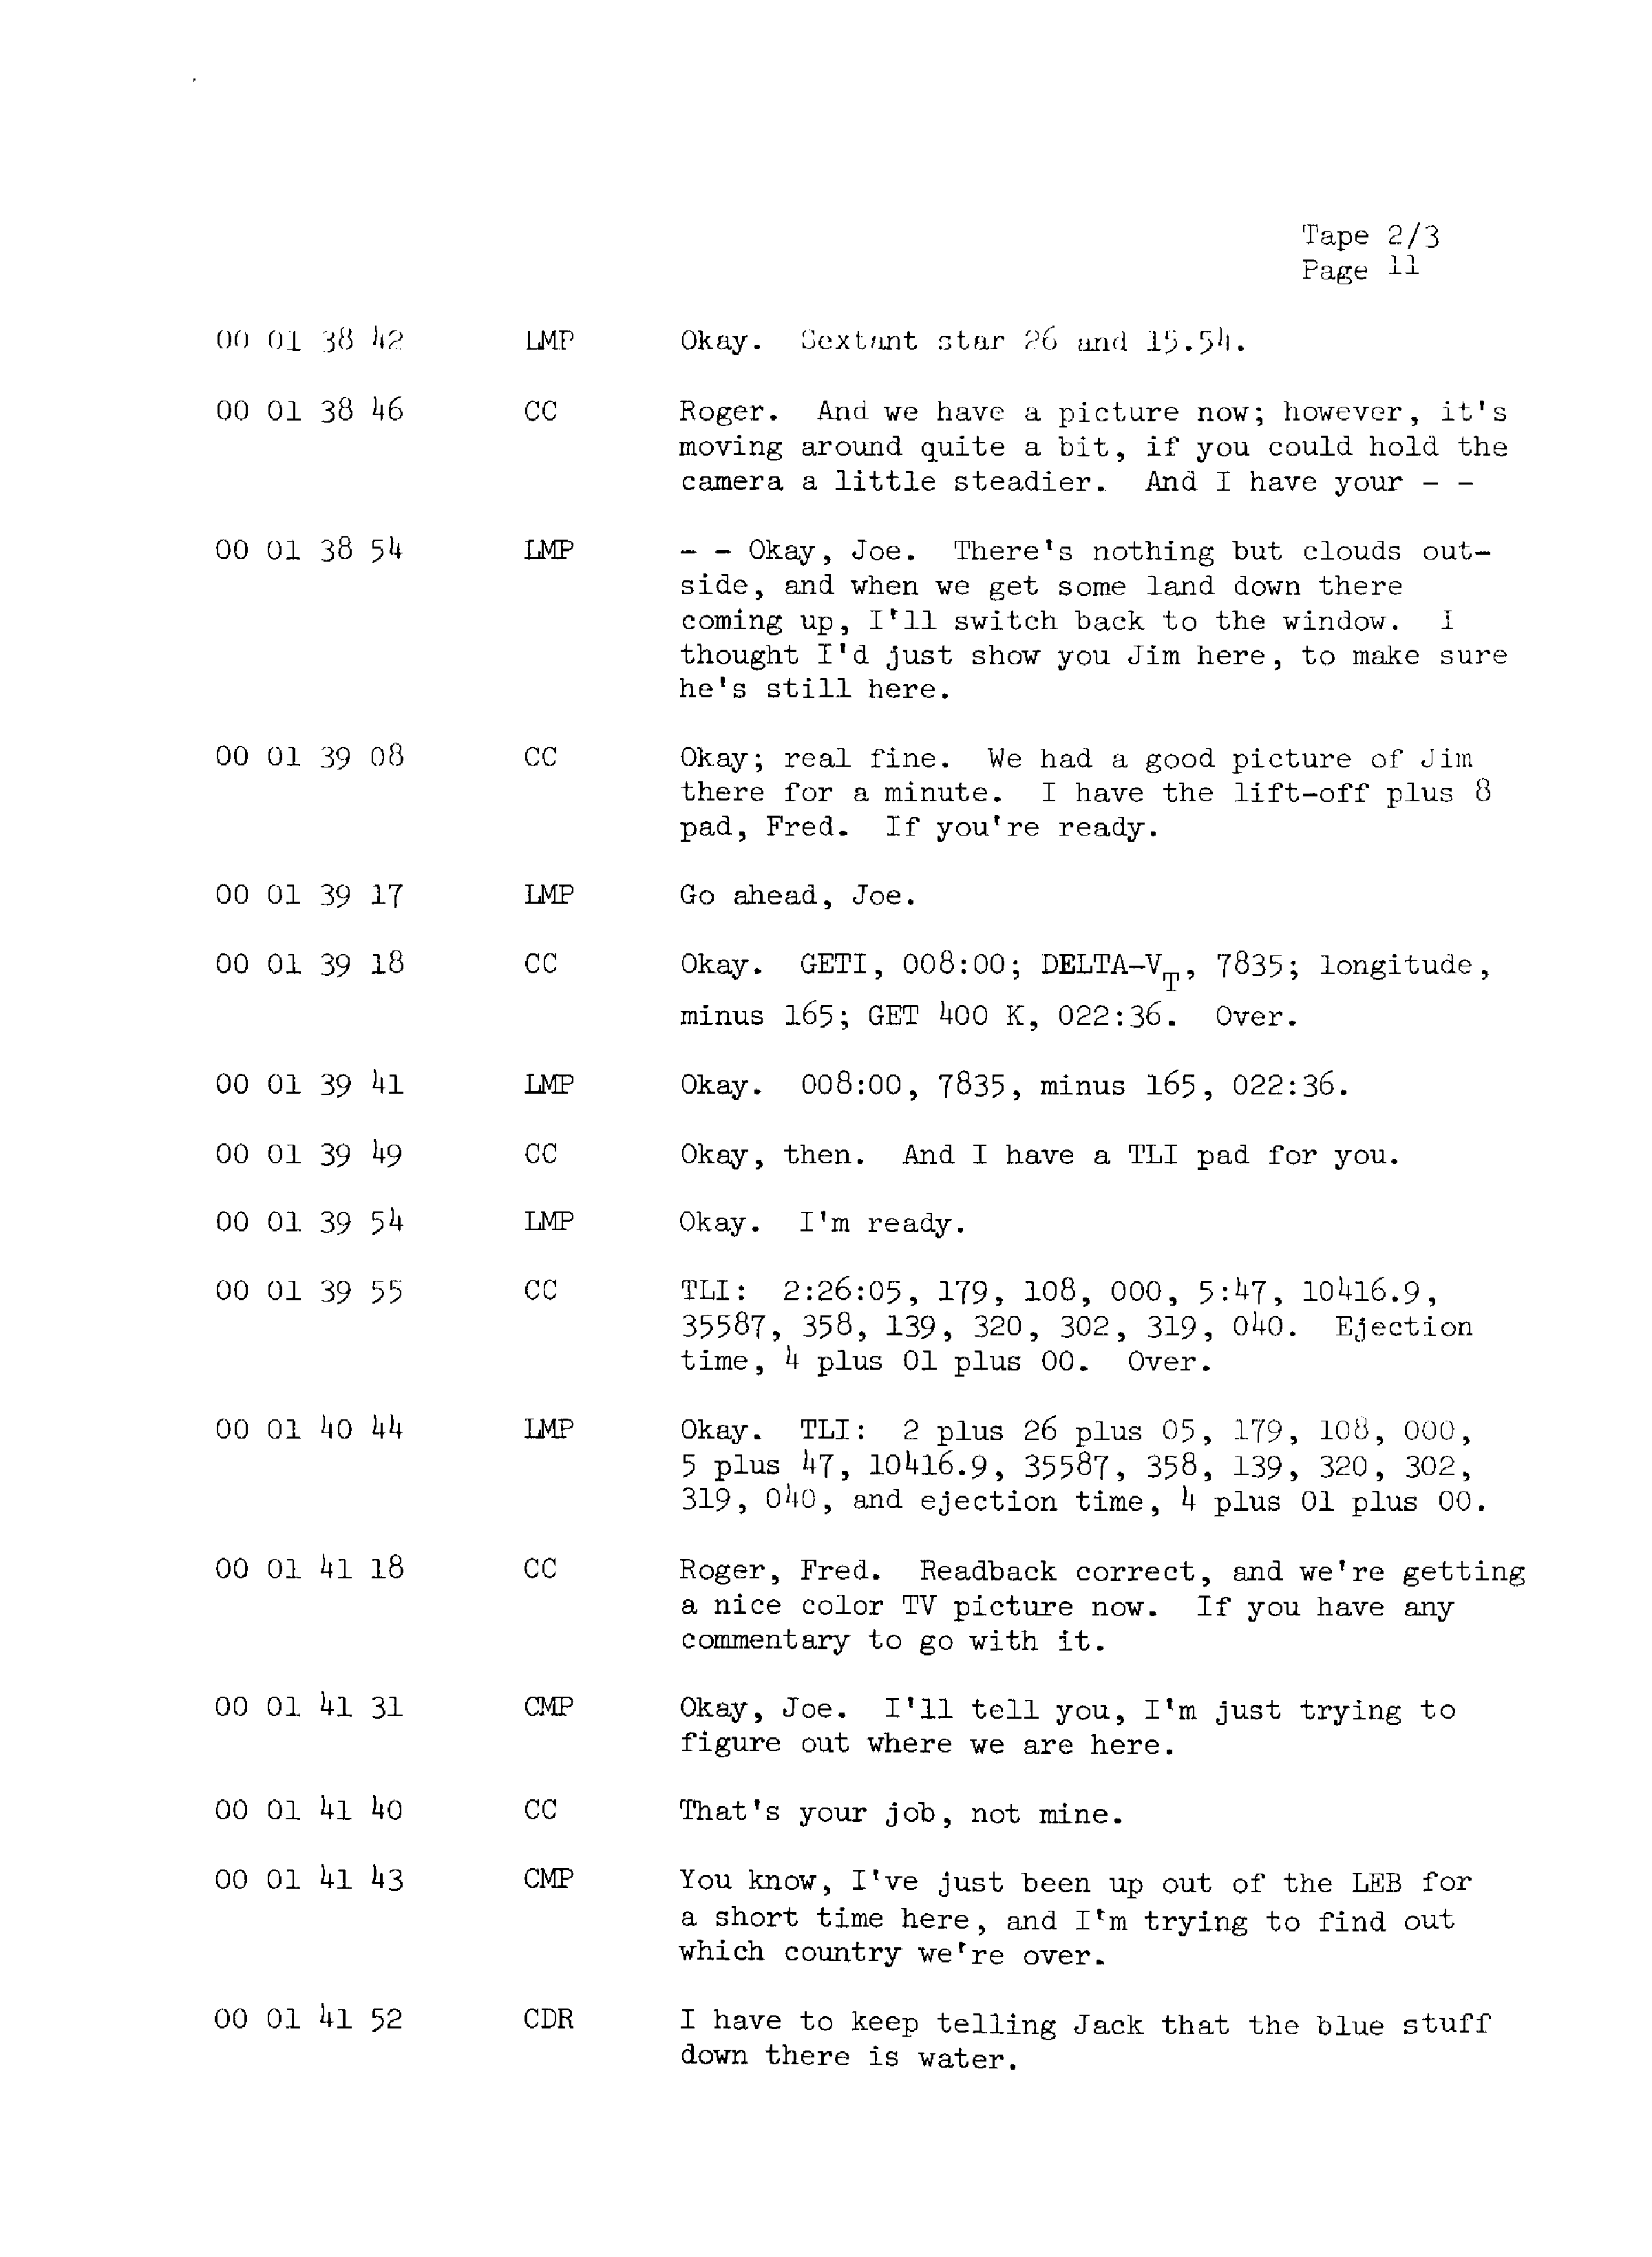 Page 18 of Apollo 13’s original transcript